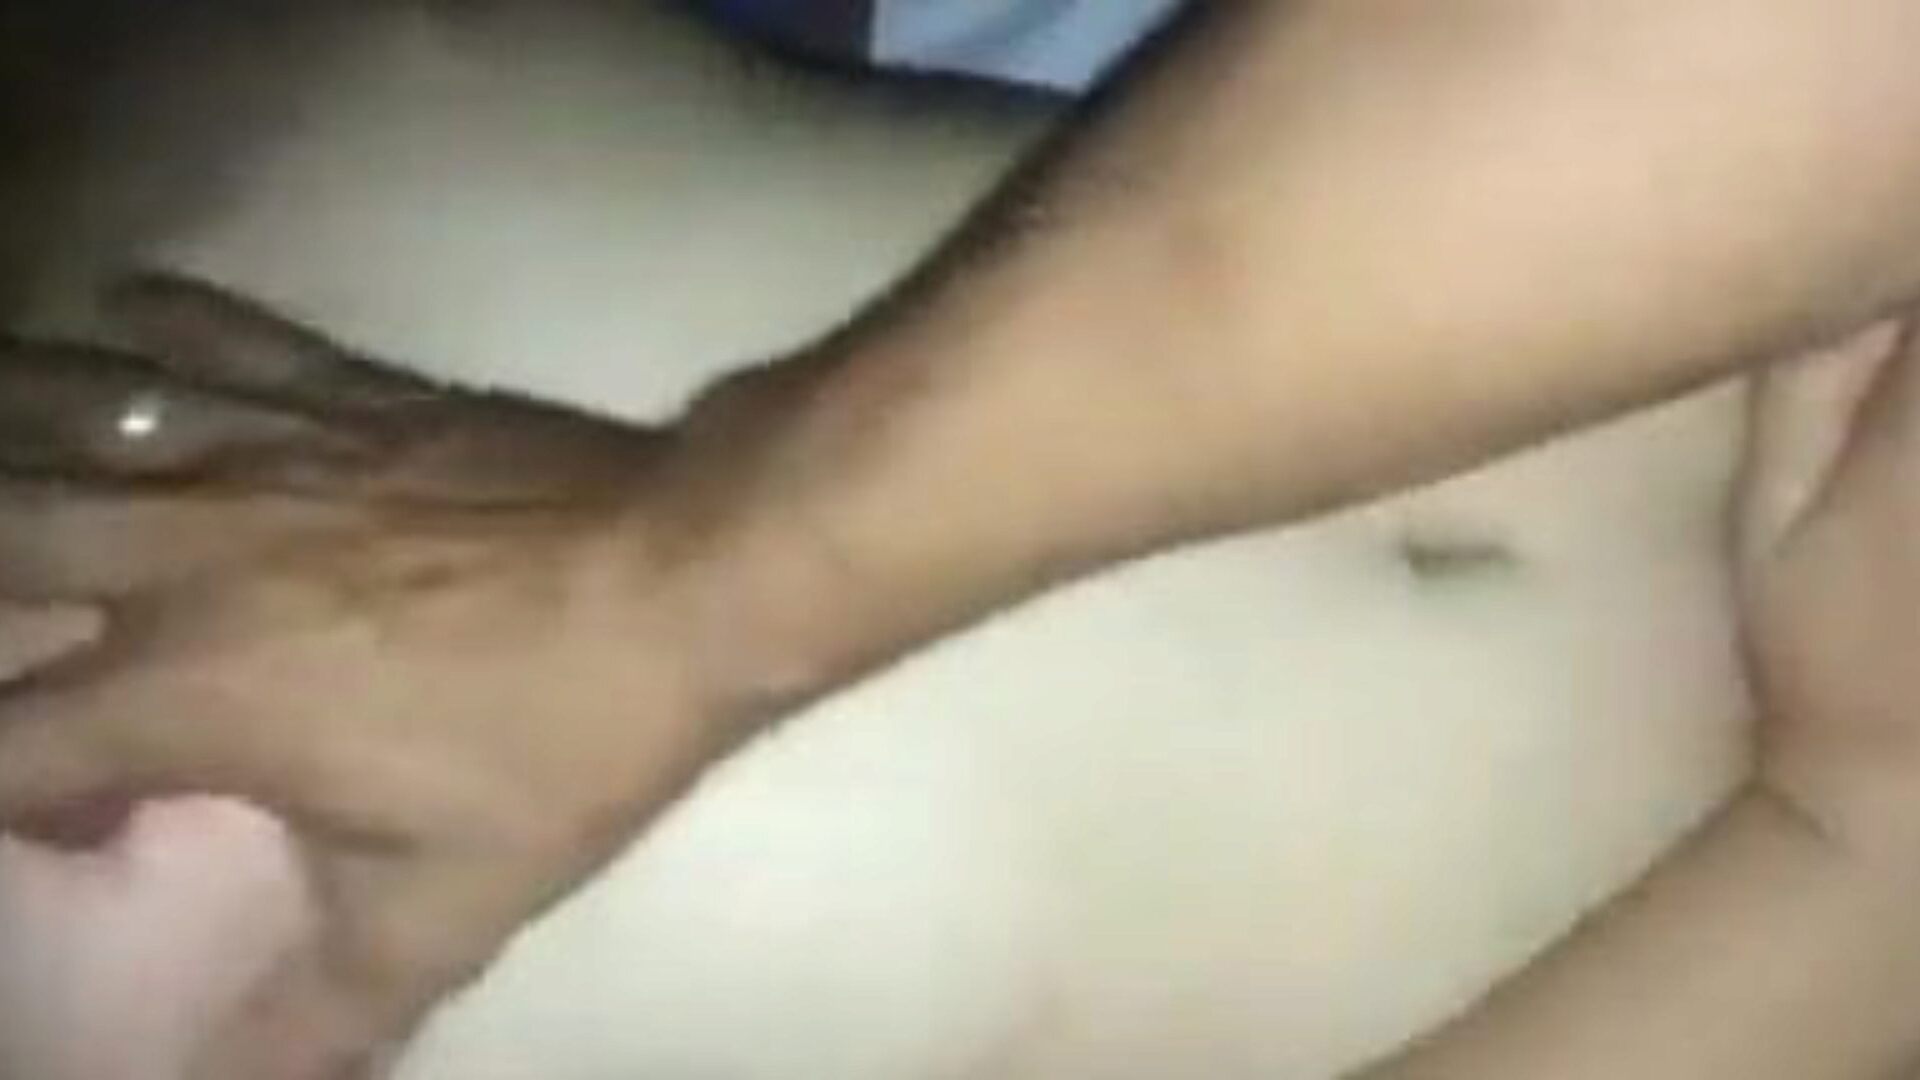 ksubtwba: δωρεάν manipuri & σπιτικό πορνό βίντεο 93 - xhamster παρακολουθήστε το ksubtwba tube clip σεξ δωρεάν στο xhamster, με την καταπληκτική συλλογή από manipuri, σπιτικά, τσούλα & γυμνά sluts πορνό βινιέτες βίντεο